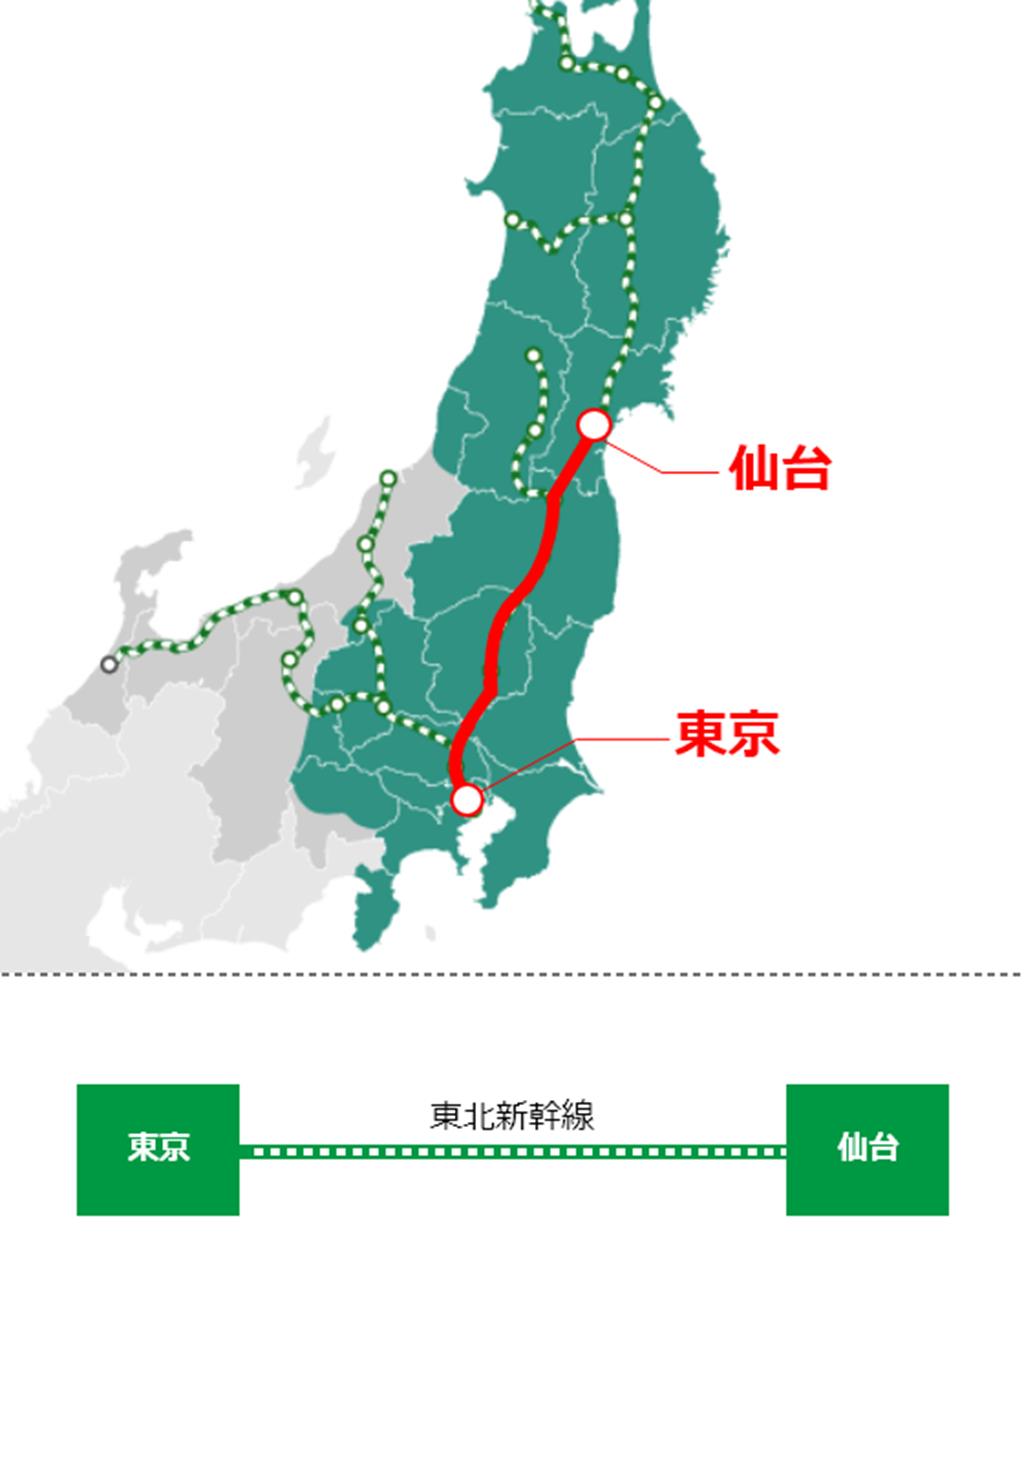 JR東日本鐵路周遊券(東北地區) 使用